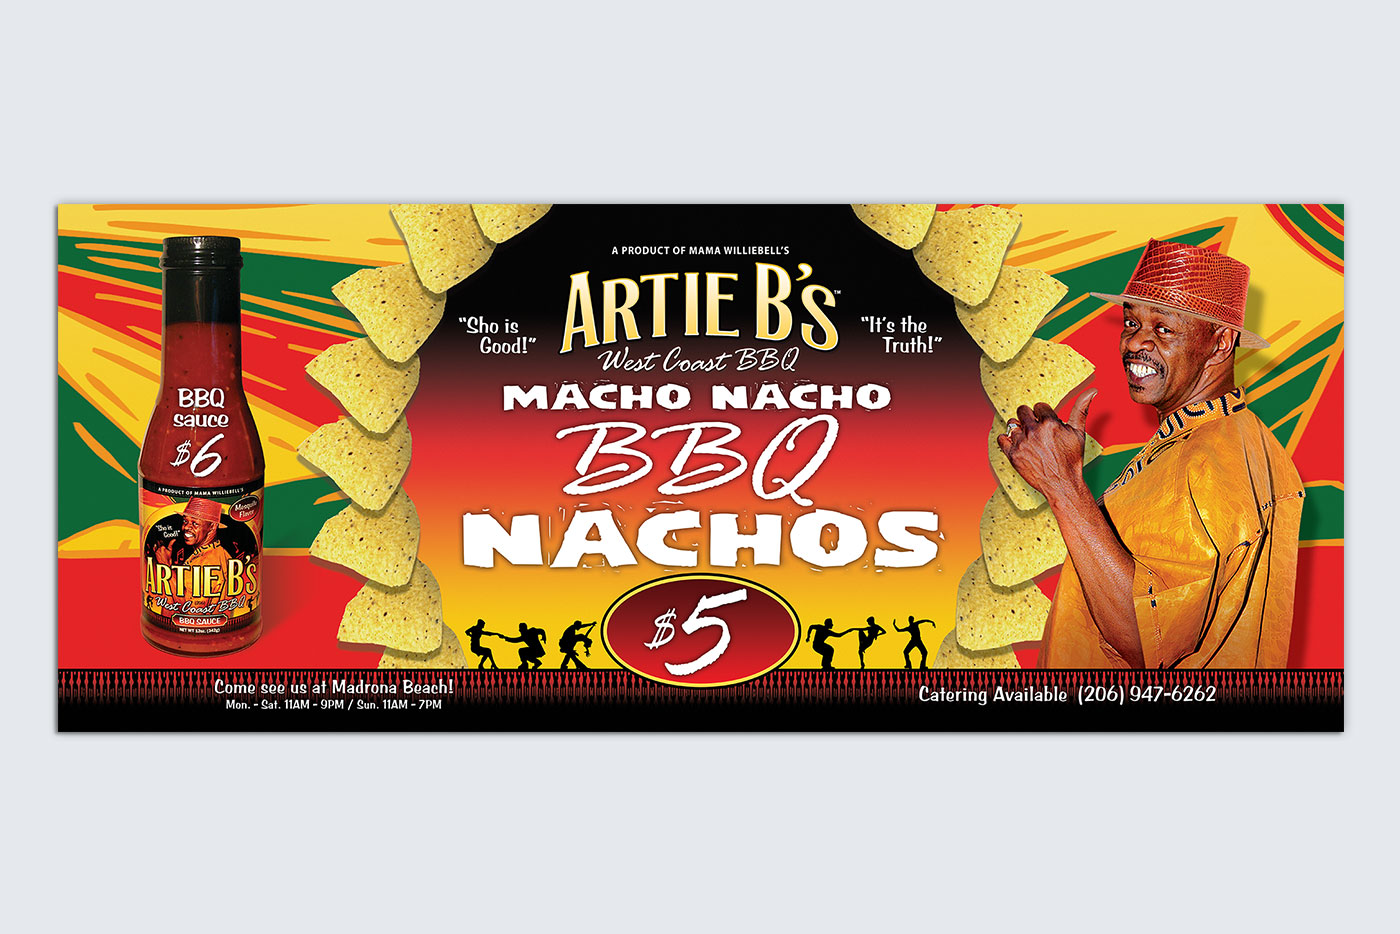 Artie B’s West Coast BBQ